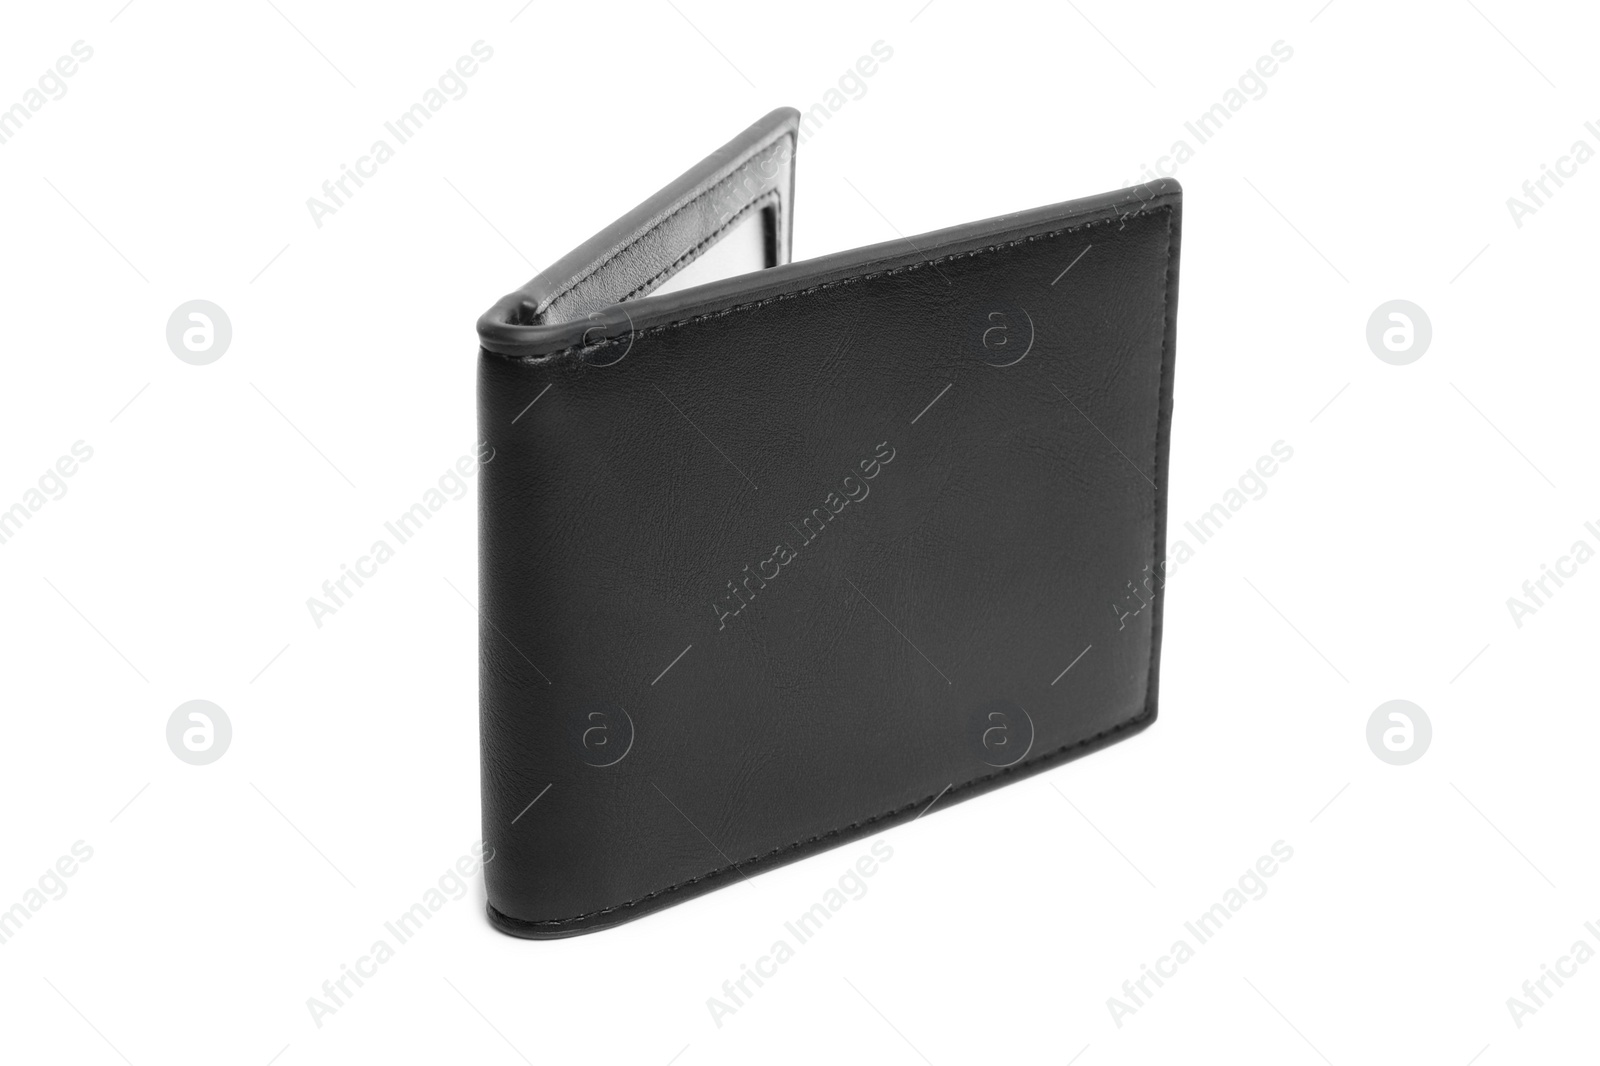 Photo of Stylish black leather wallet isolated on white